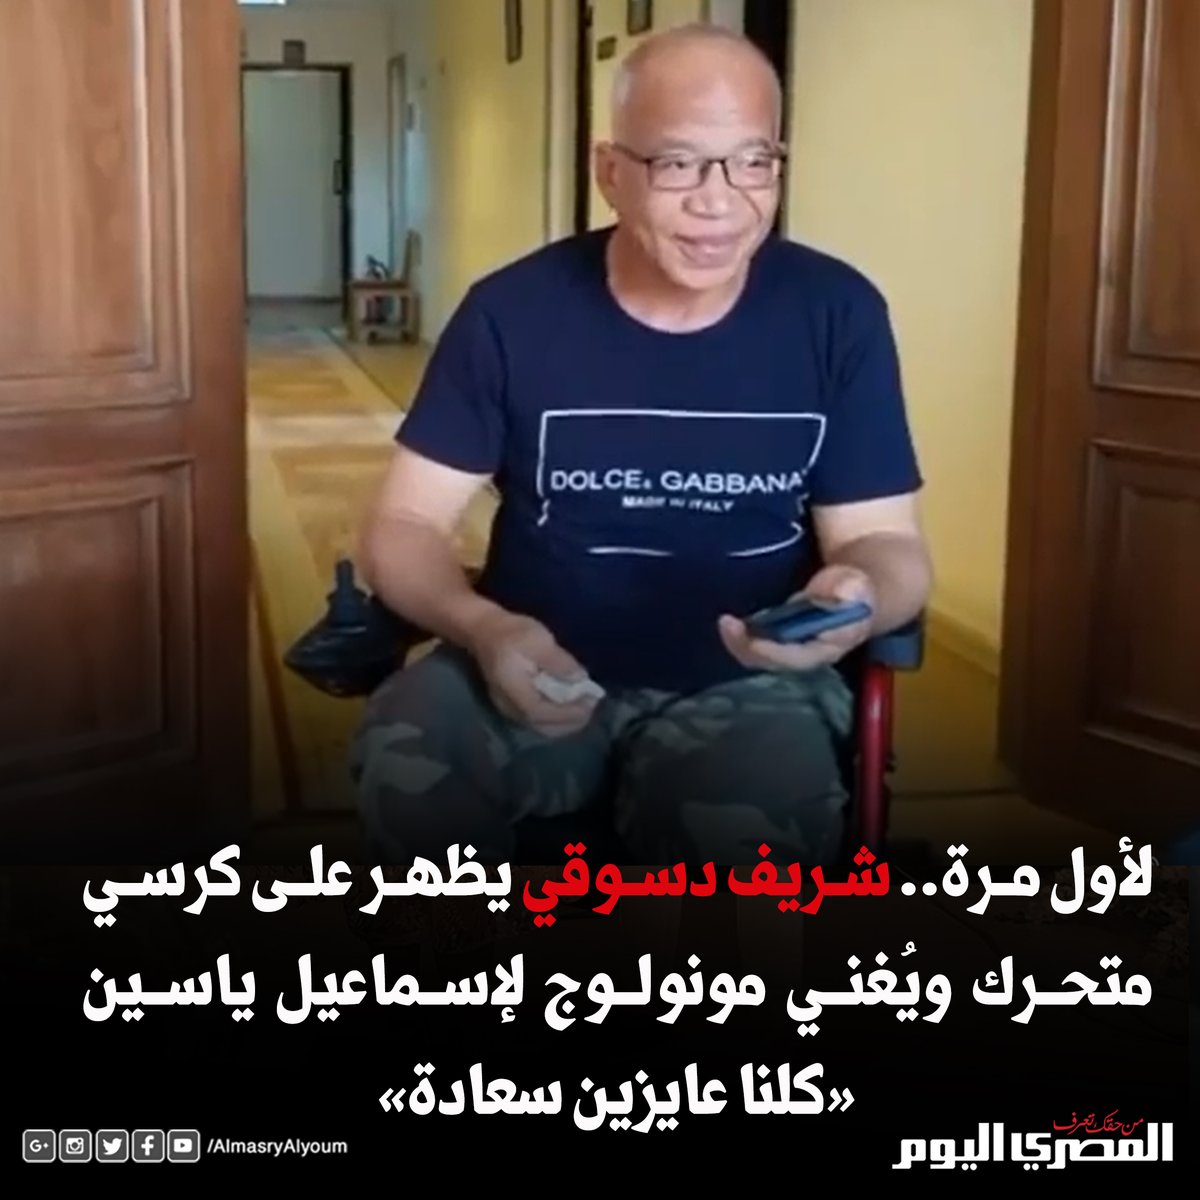 لأول مرة.. شريف دسوقي يظهر على كرسي متحرك ويُغني مونولوج لإسماعيل ياسين «كلنا عايزين سعادة»